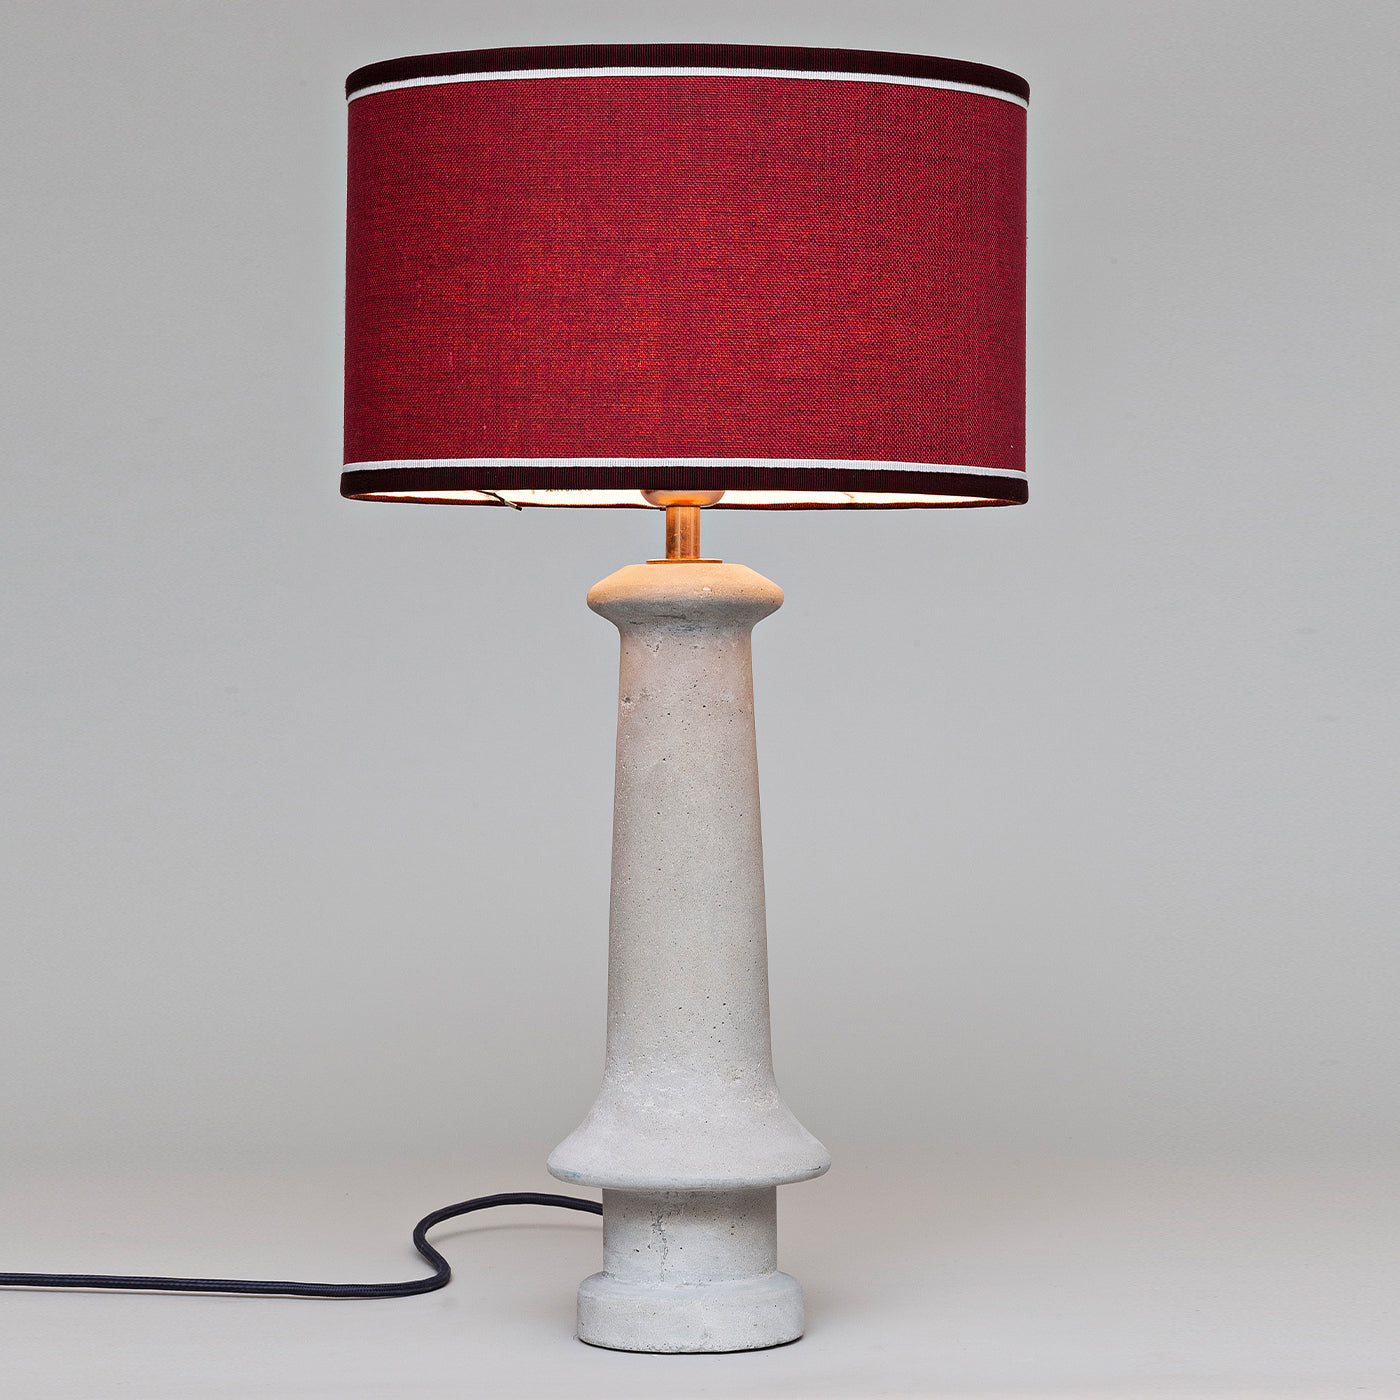 Cement Bordeaux Table Lamp - Alternative view 1